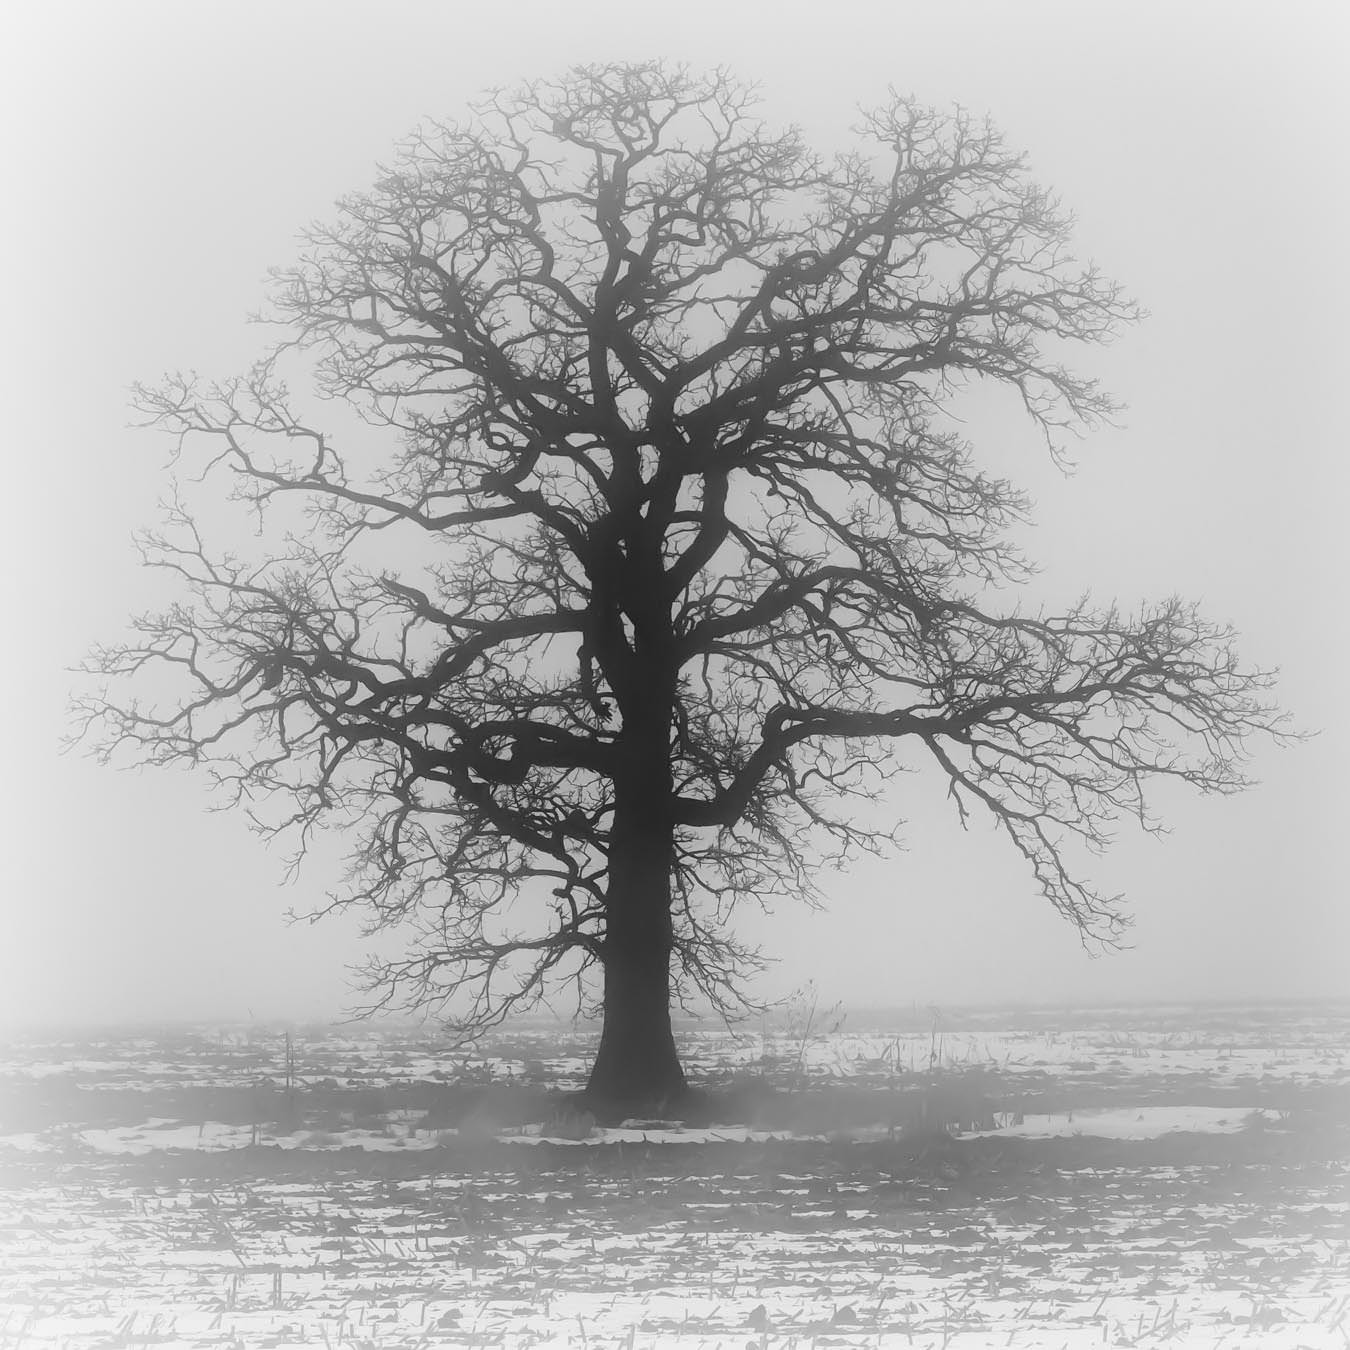 fog shrouded oak tree in winter
